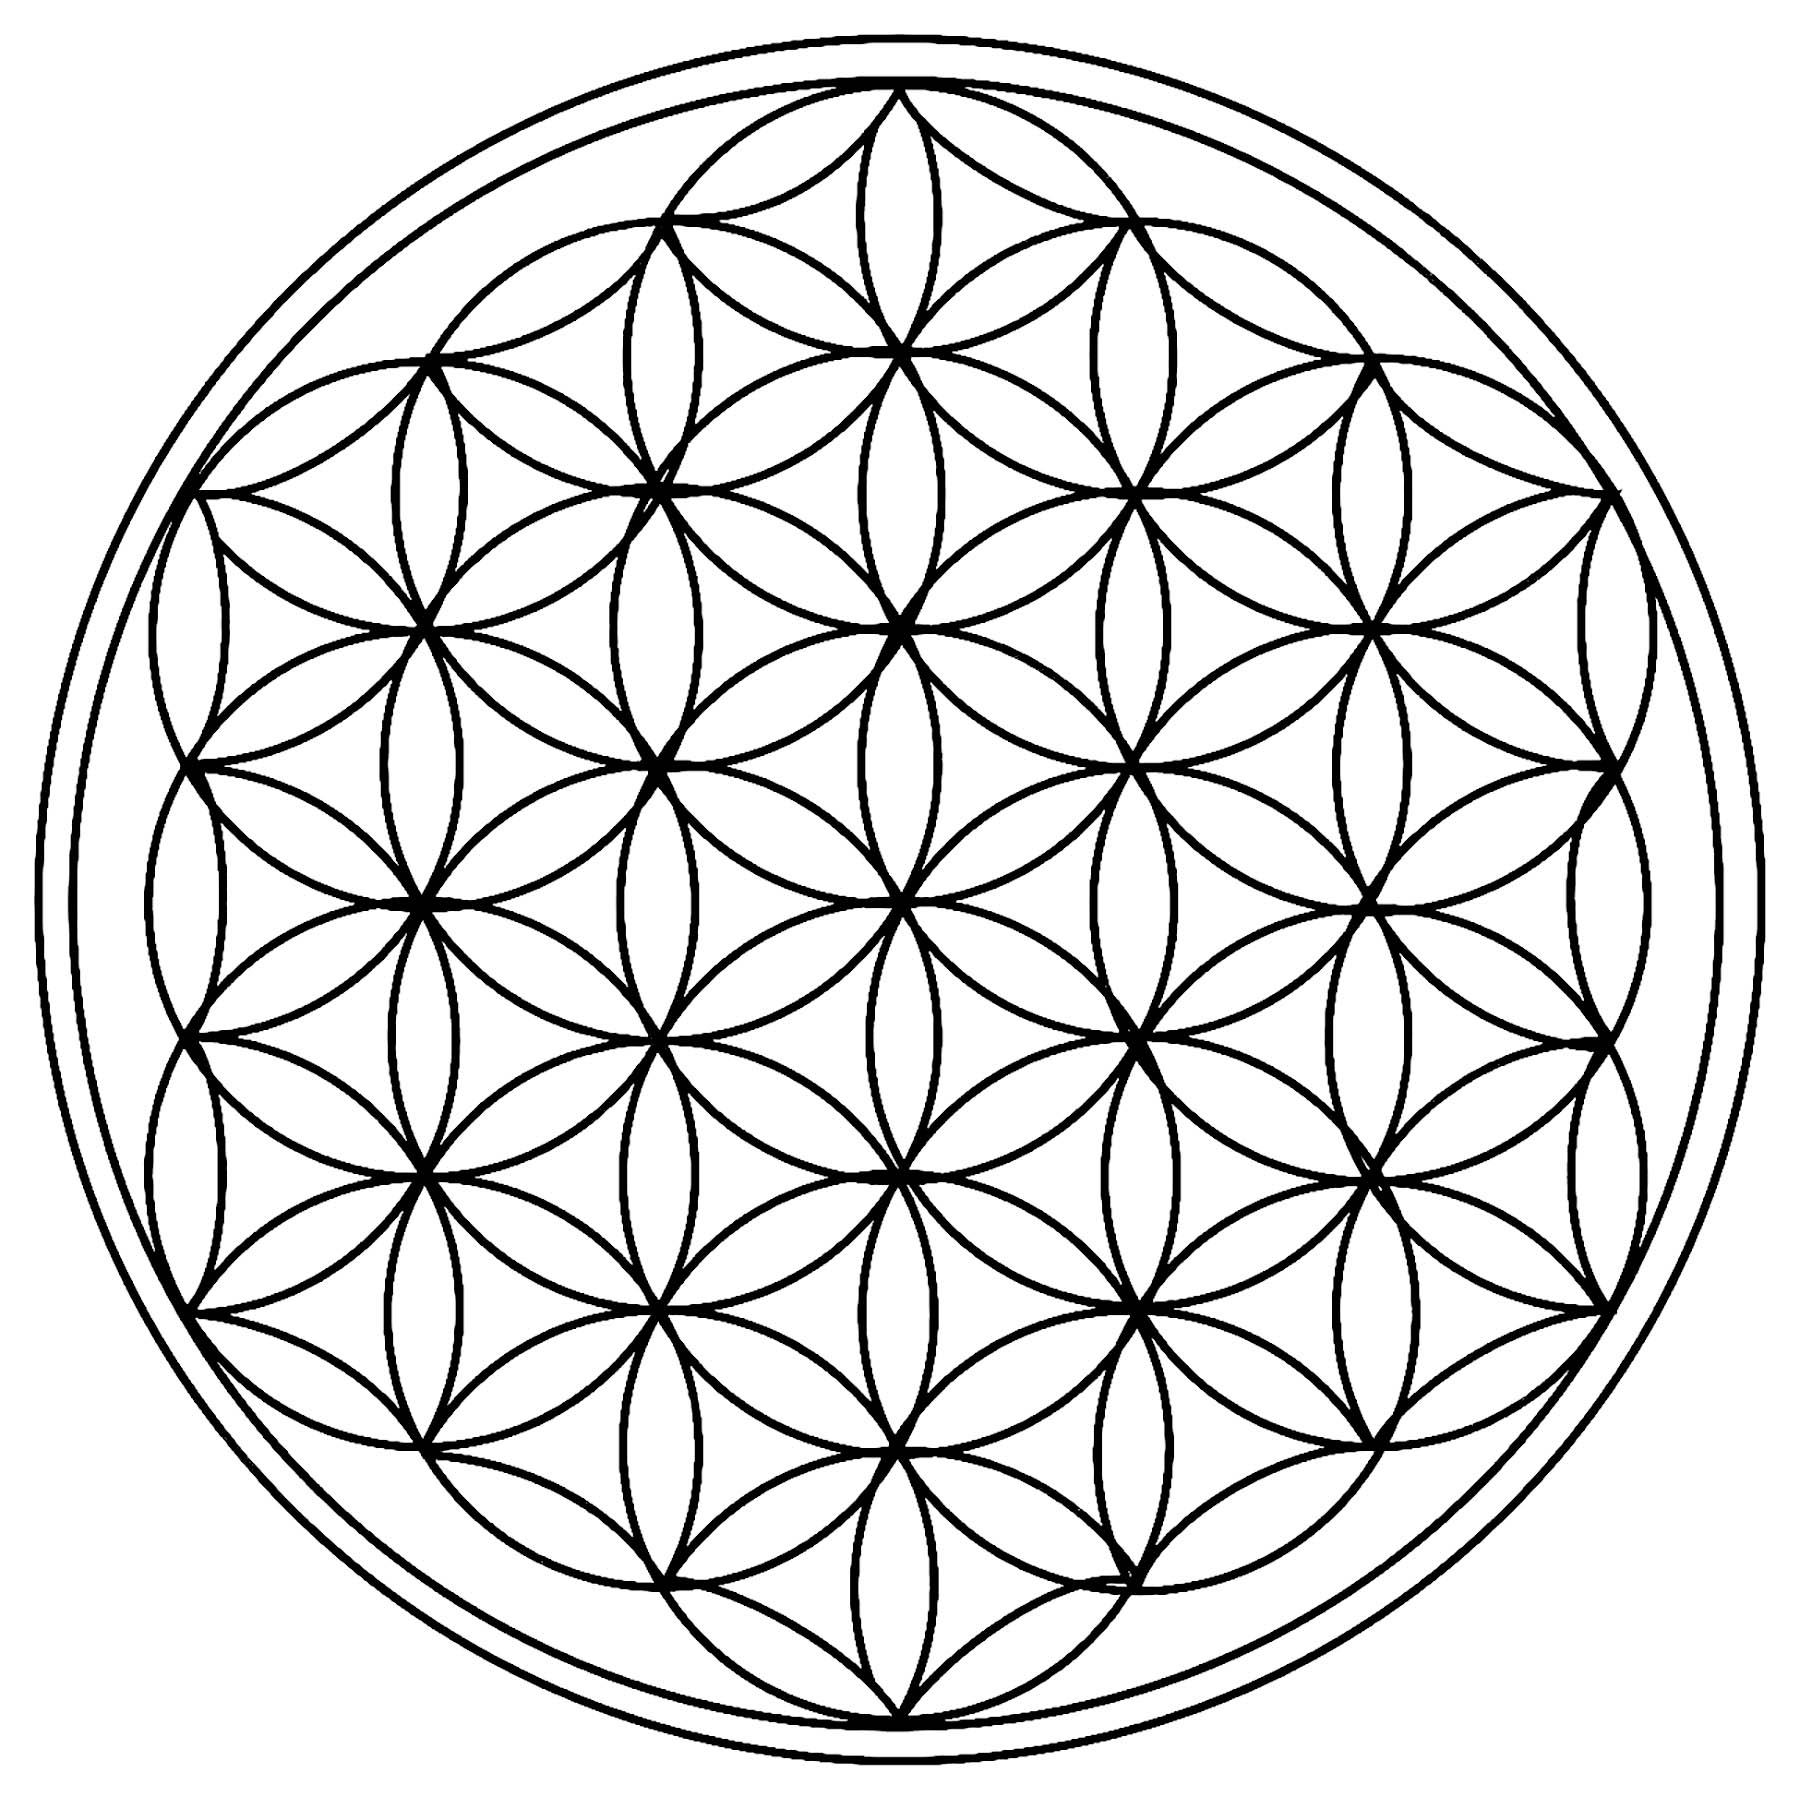 Kreise, die in einem einfachen Mandala schöne Rosetten bilden